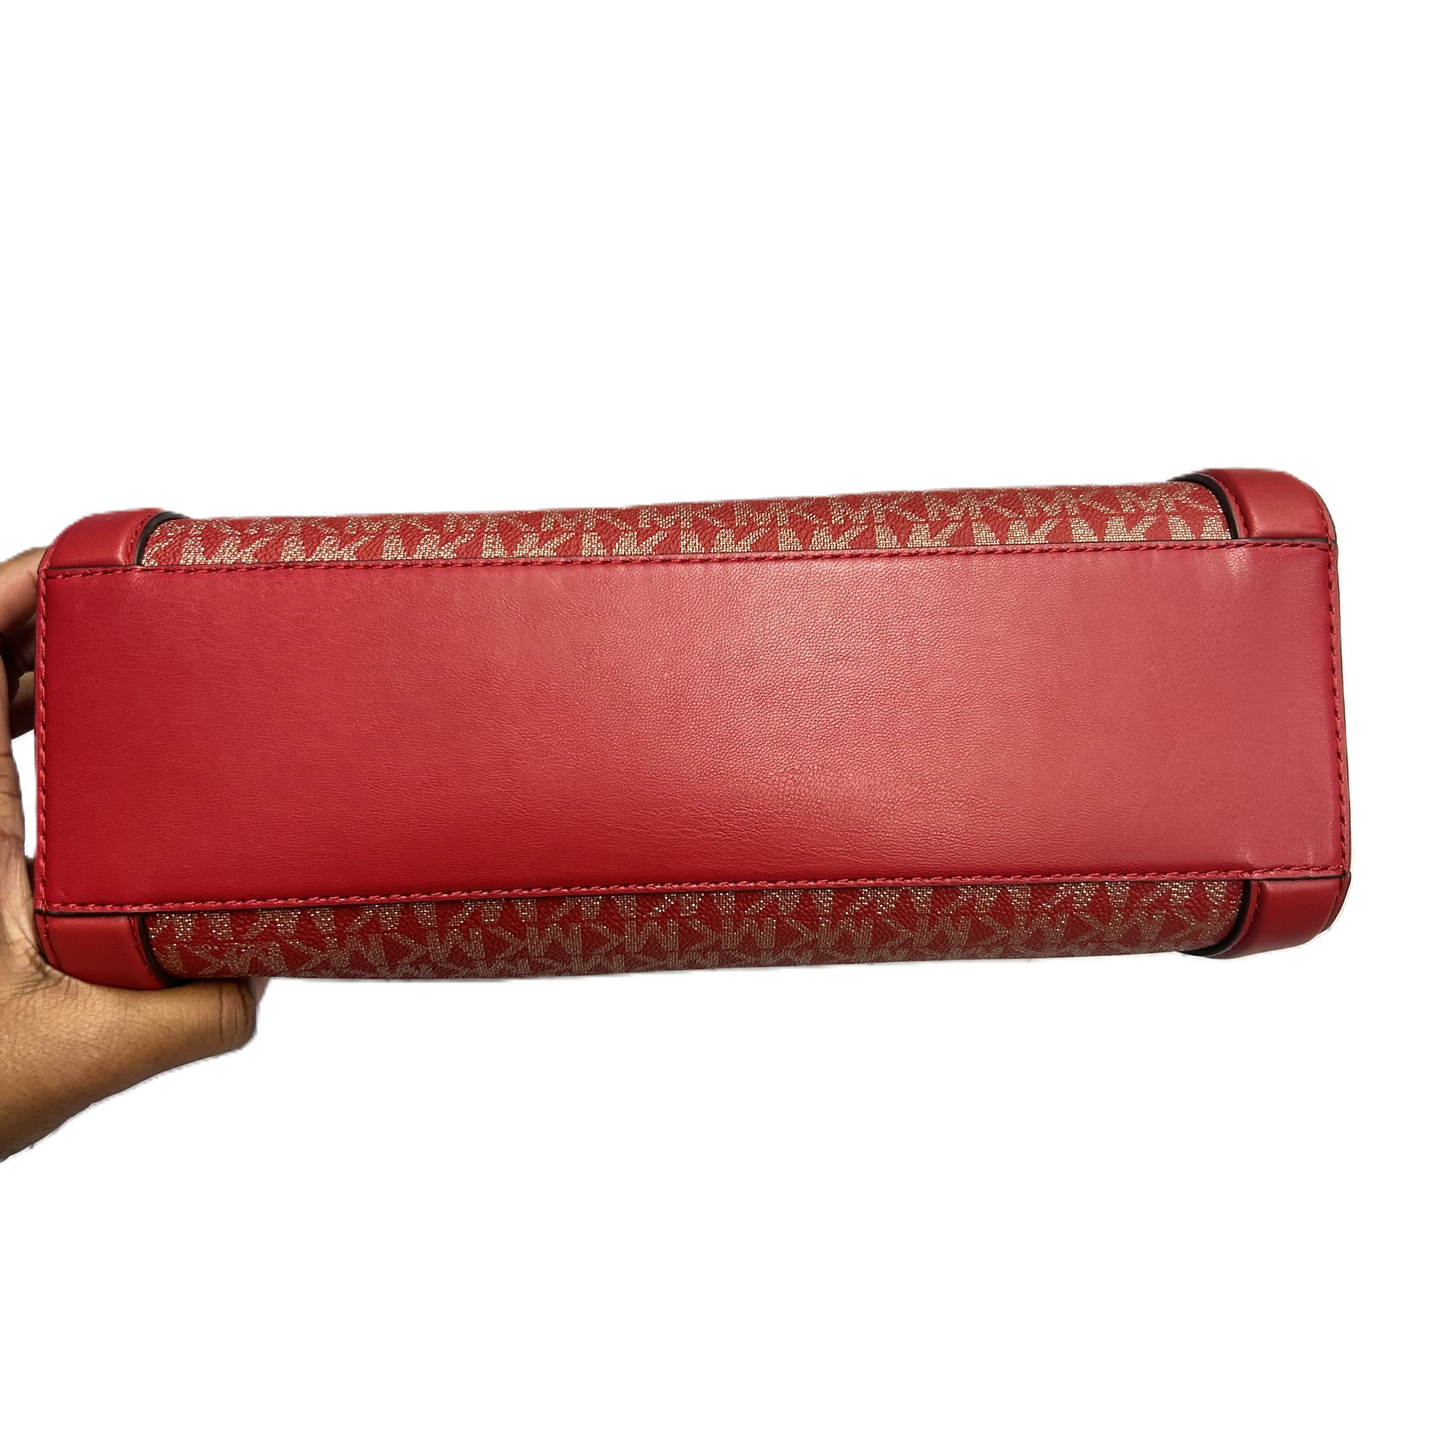 Handbag Designer By Michael Kors, Size: Medium